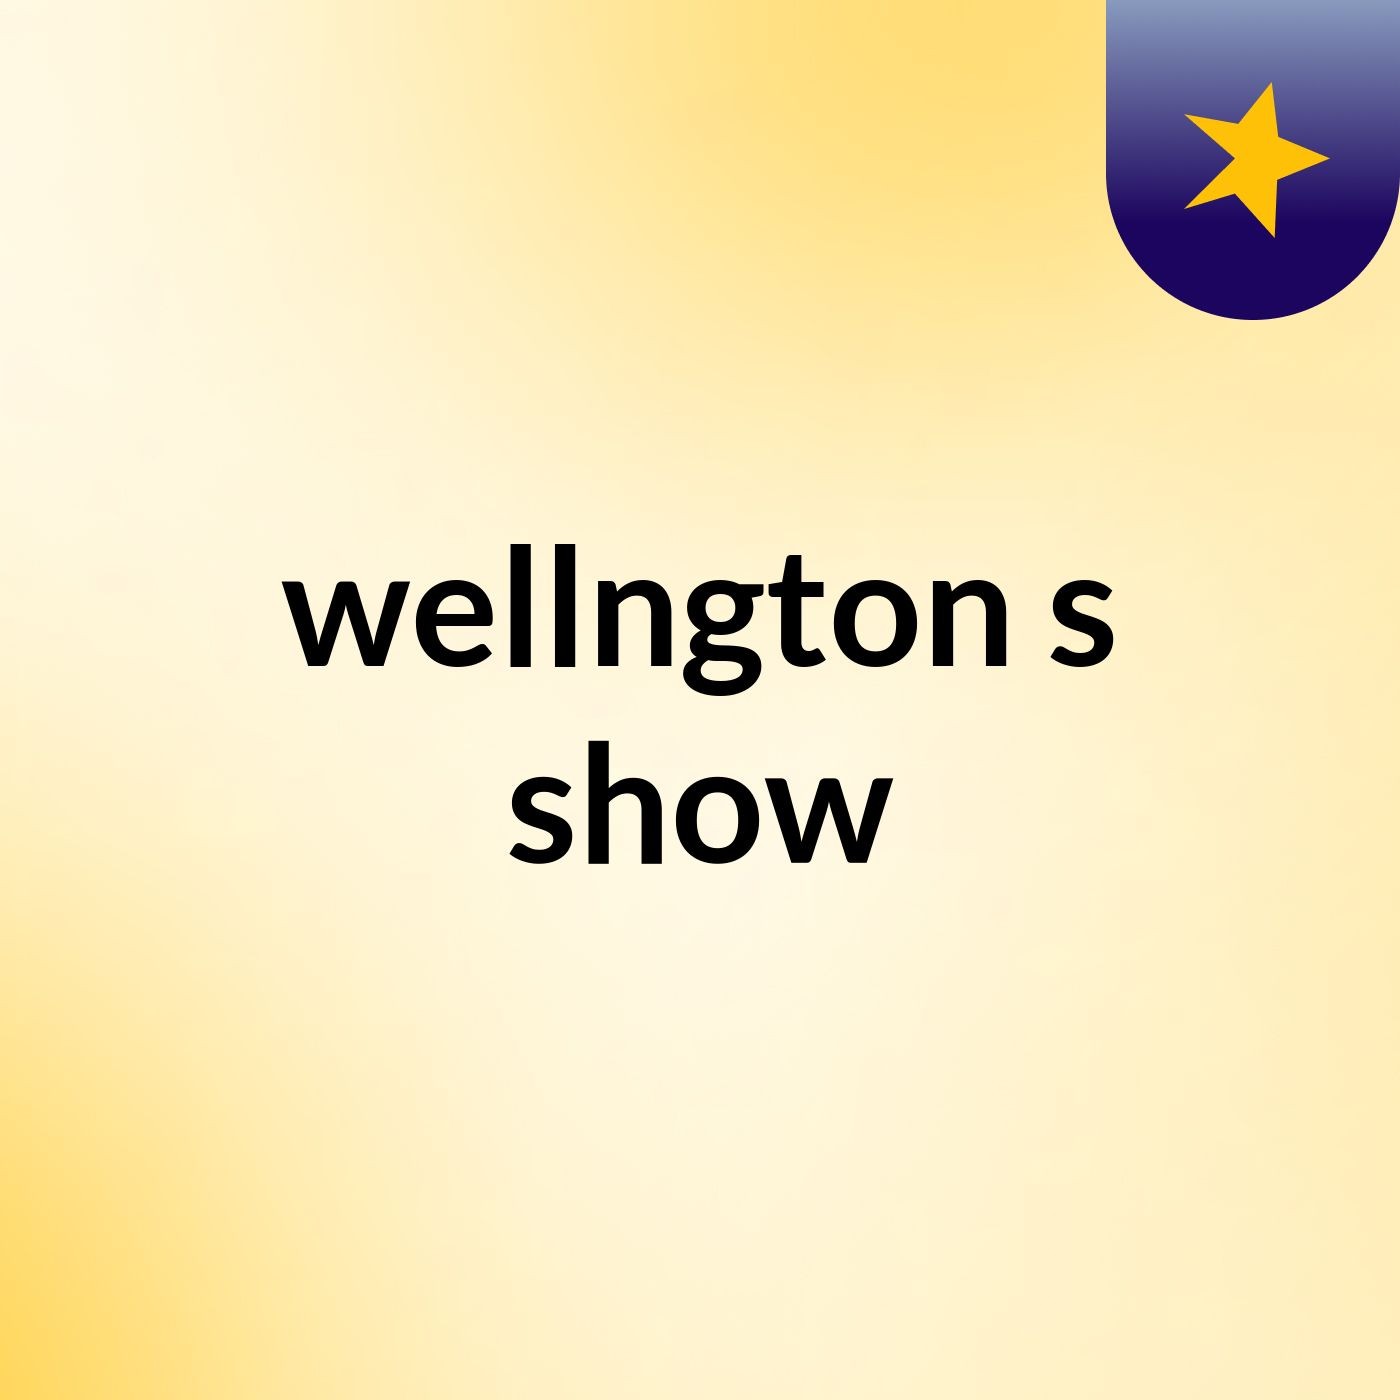 wellngton's show